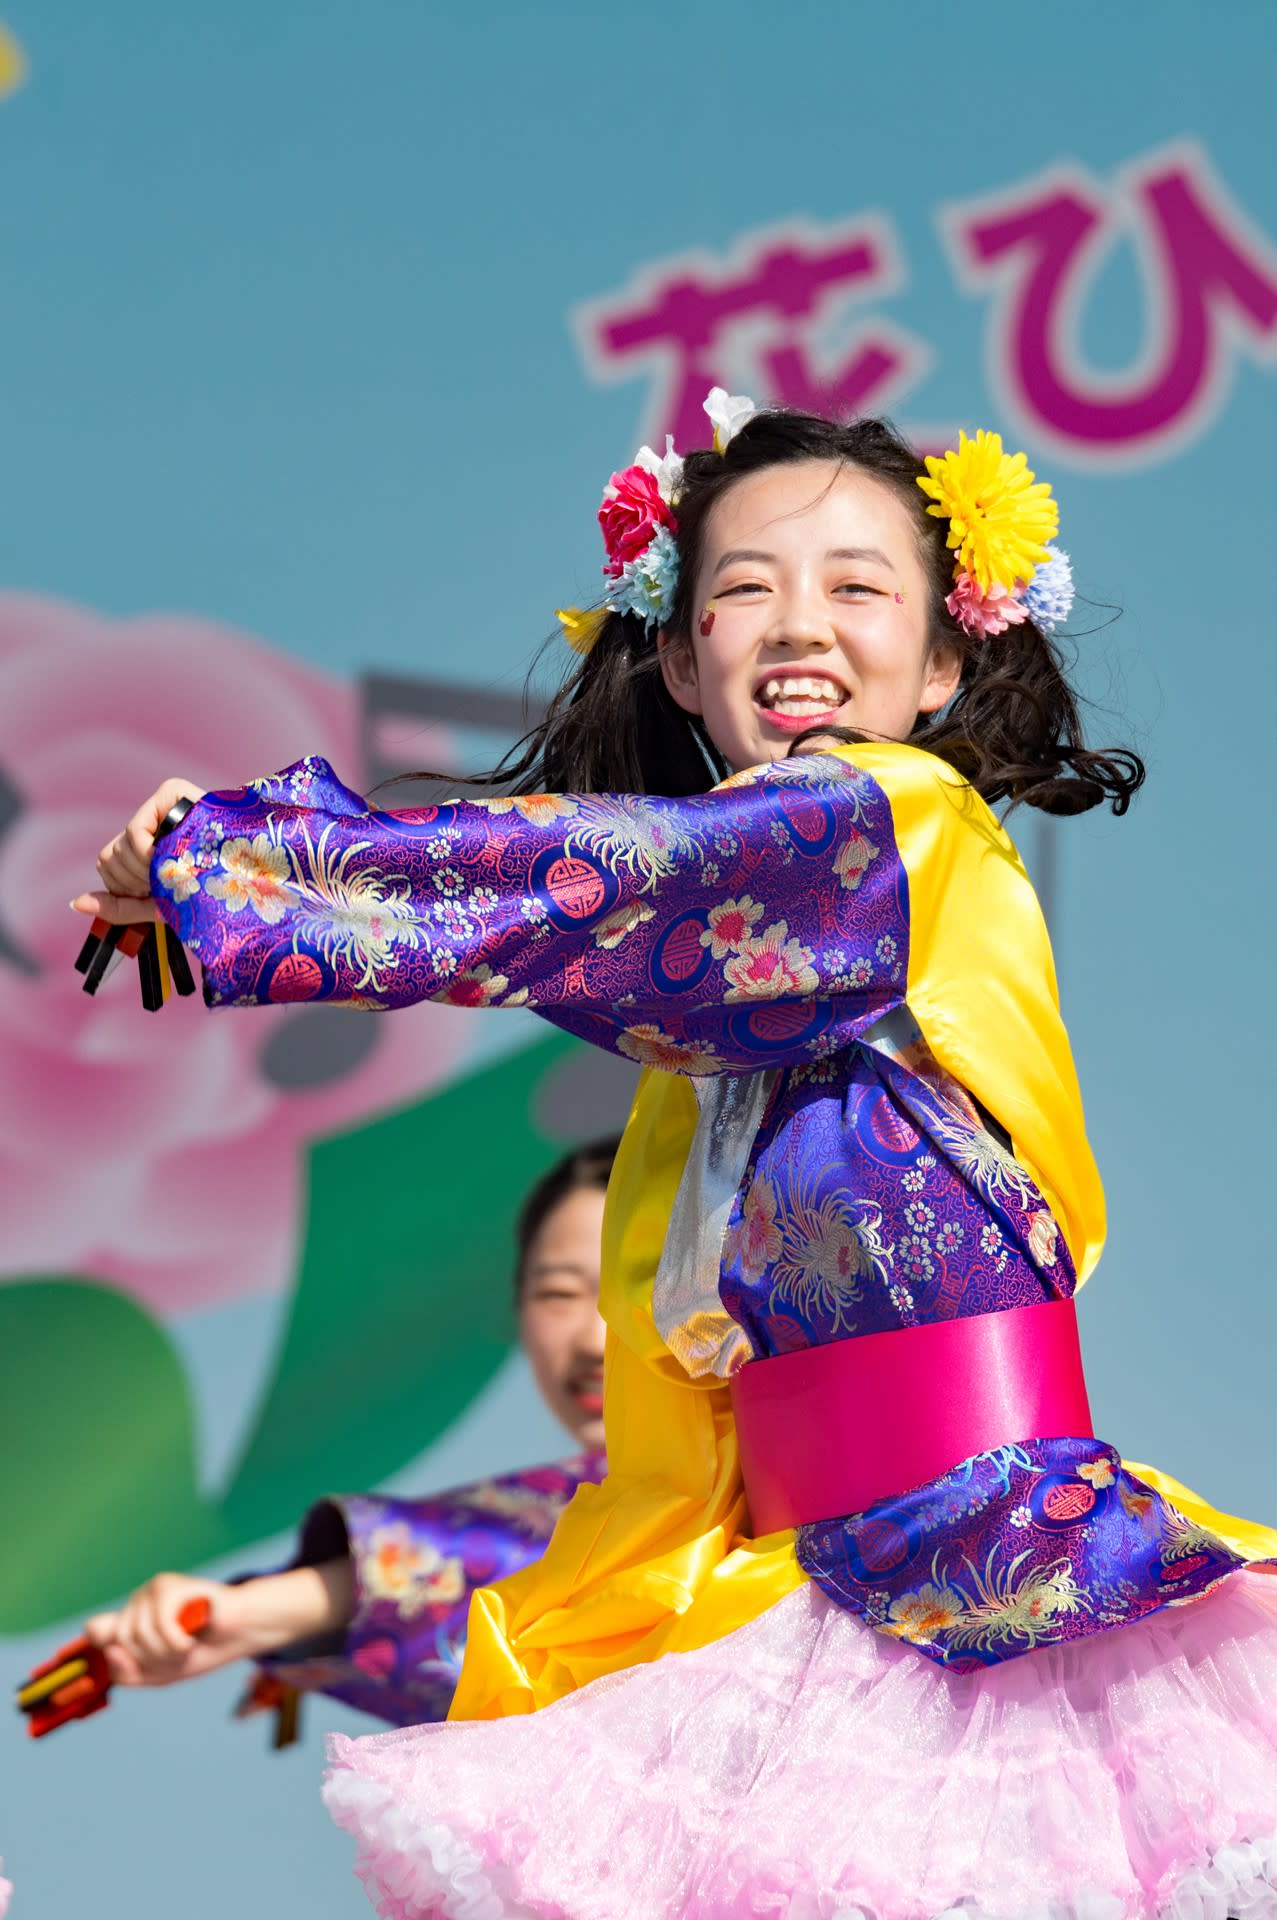 ２０１９ひろしまフラワーフェスティバル 安田女子高等学校ダンス部1 めぐる季節と共に 気ままな散策